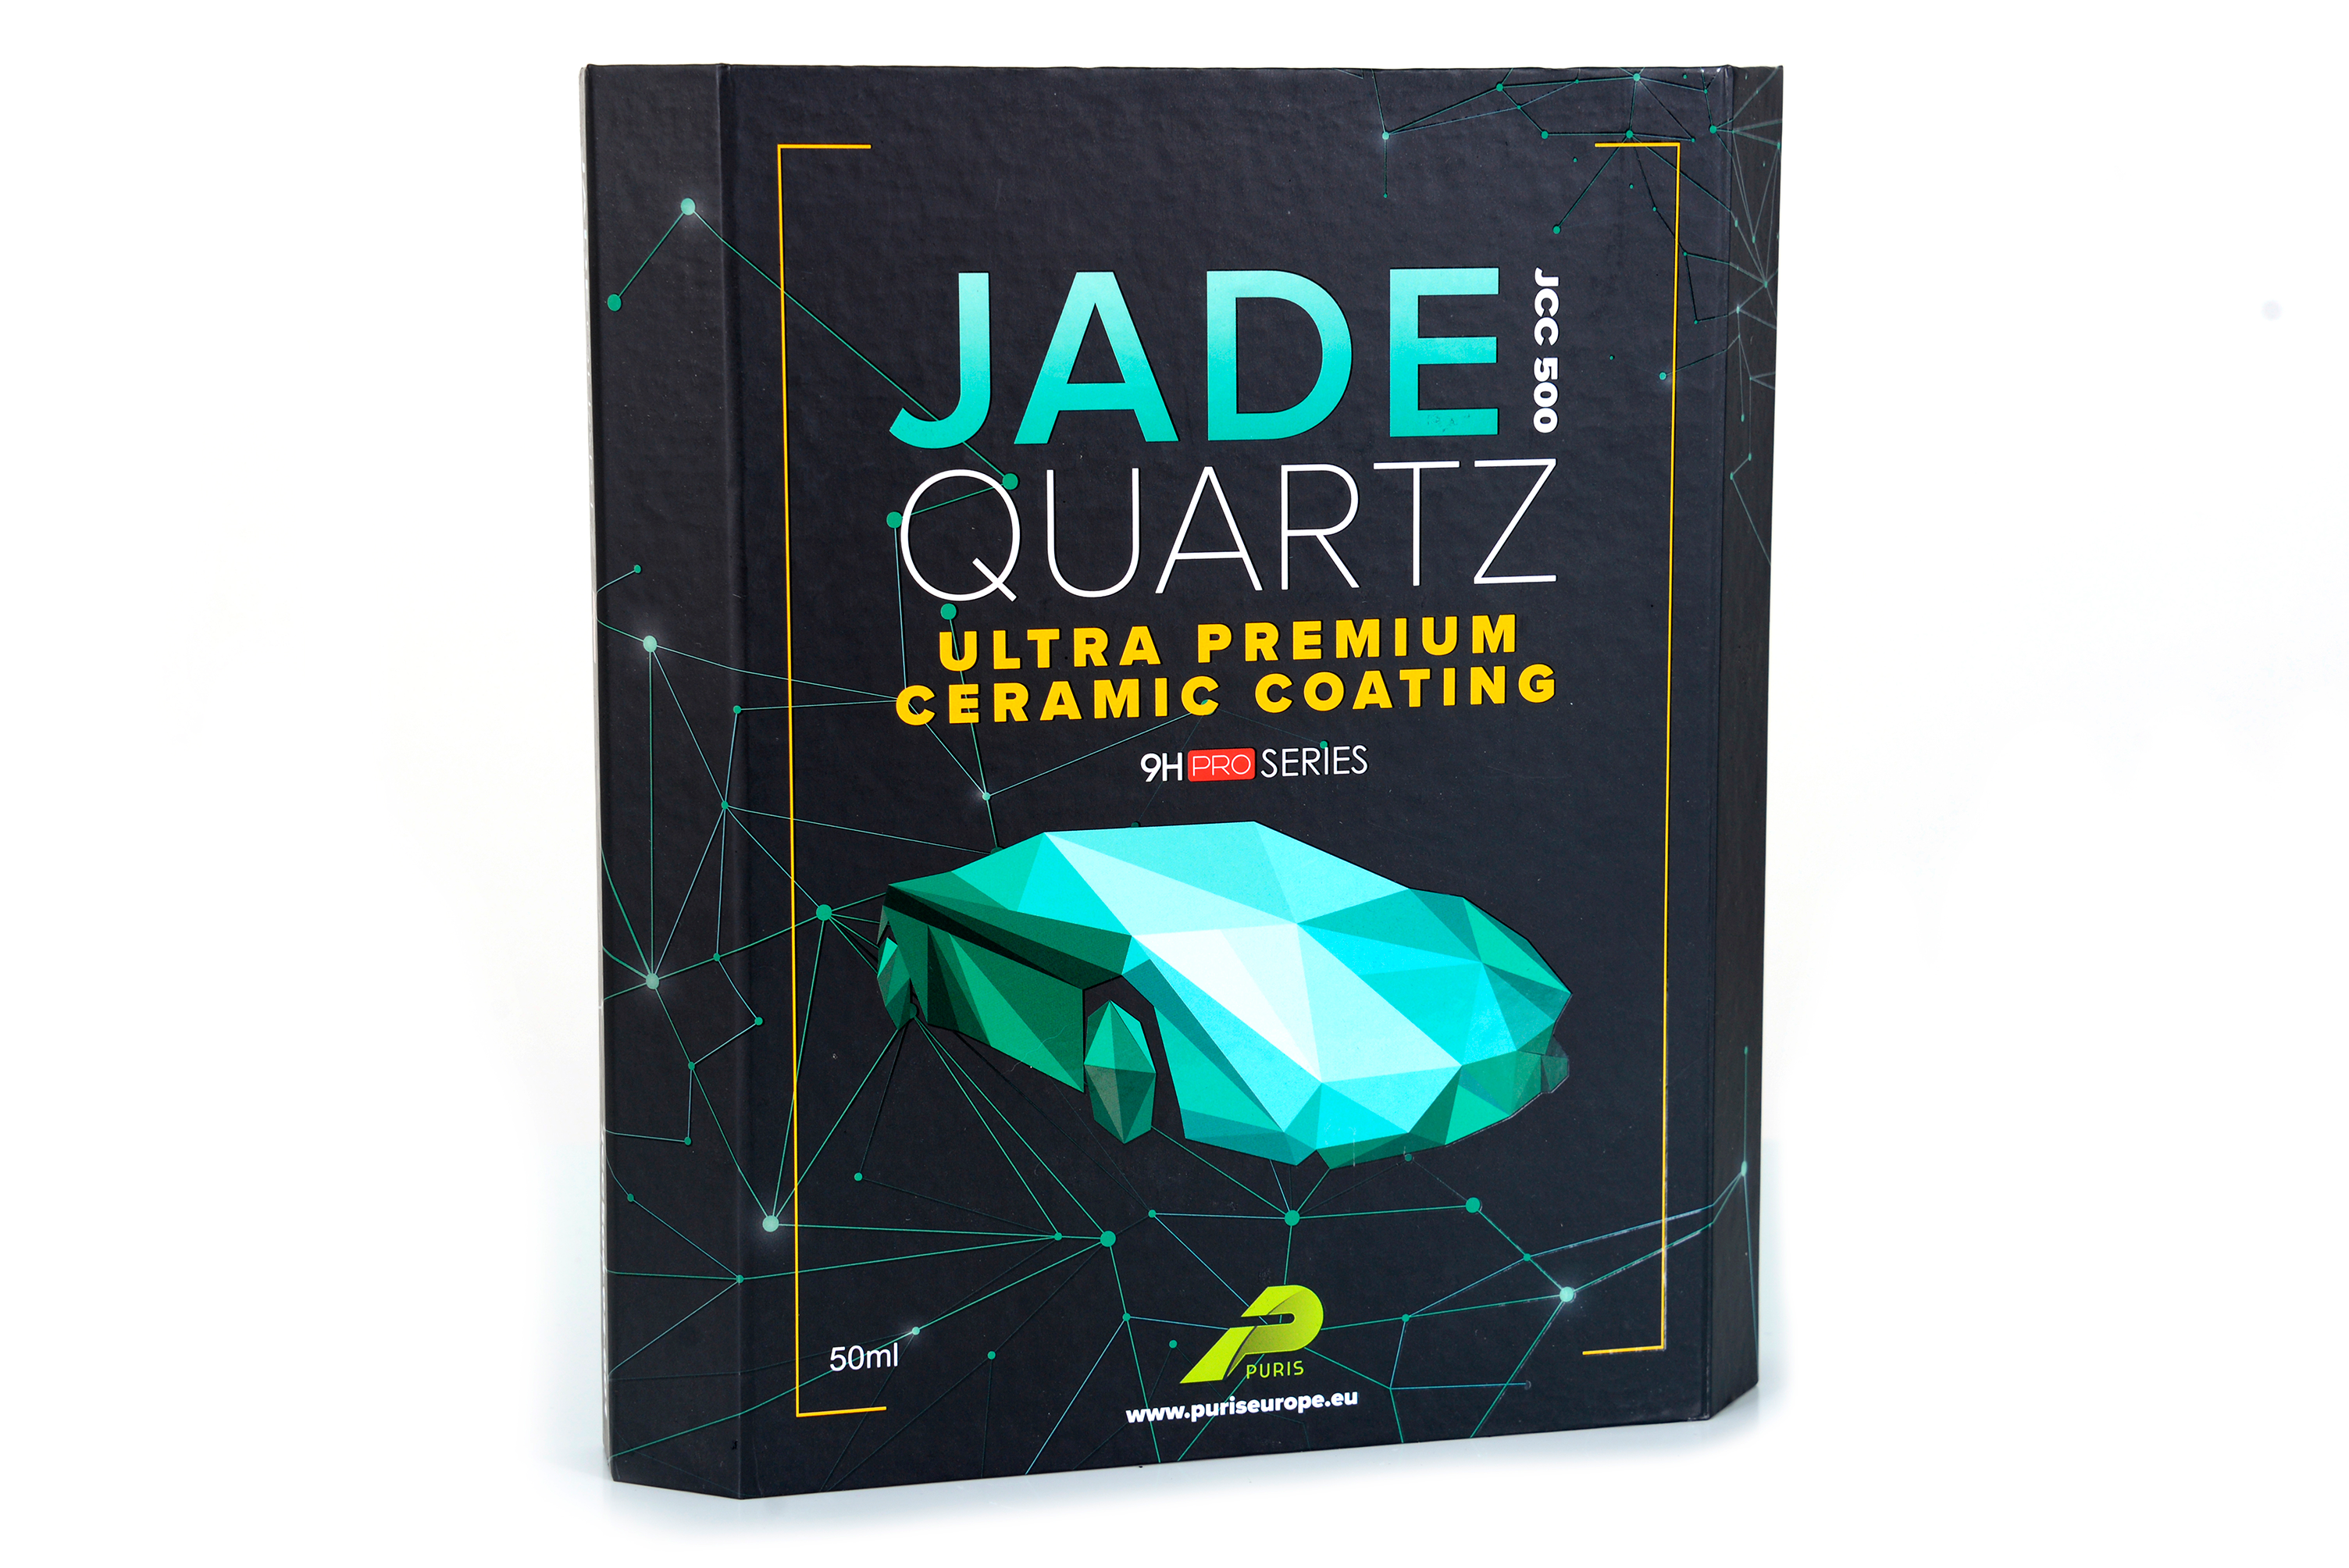 Jade Quartz